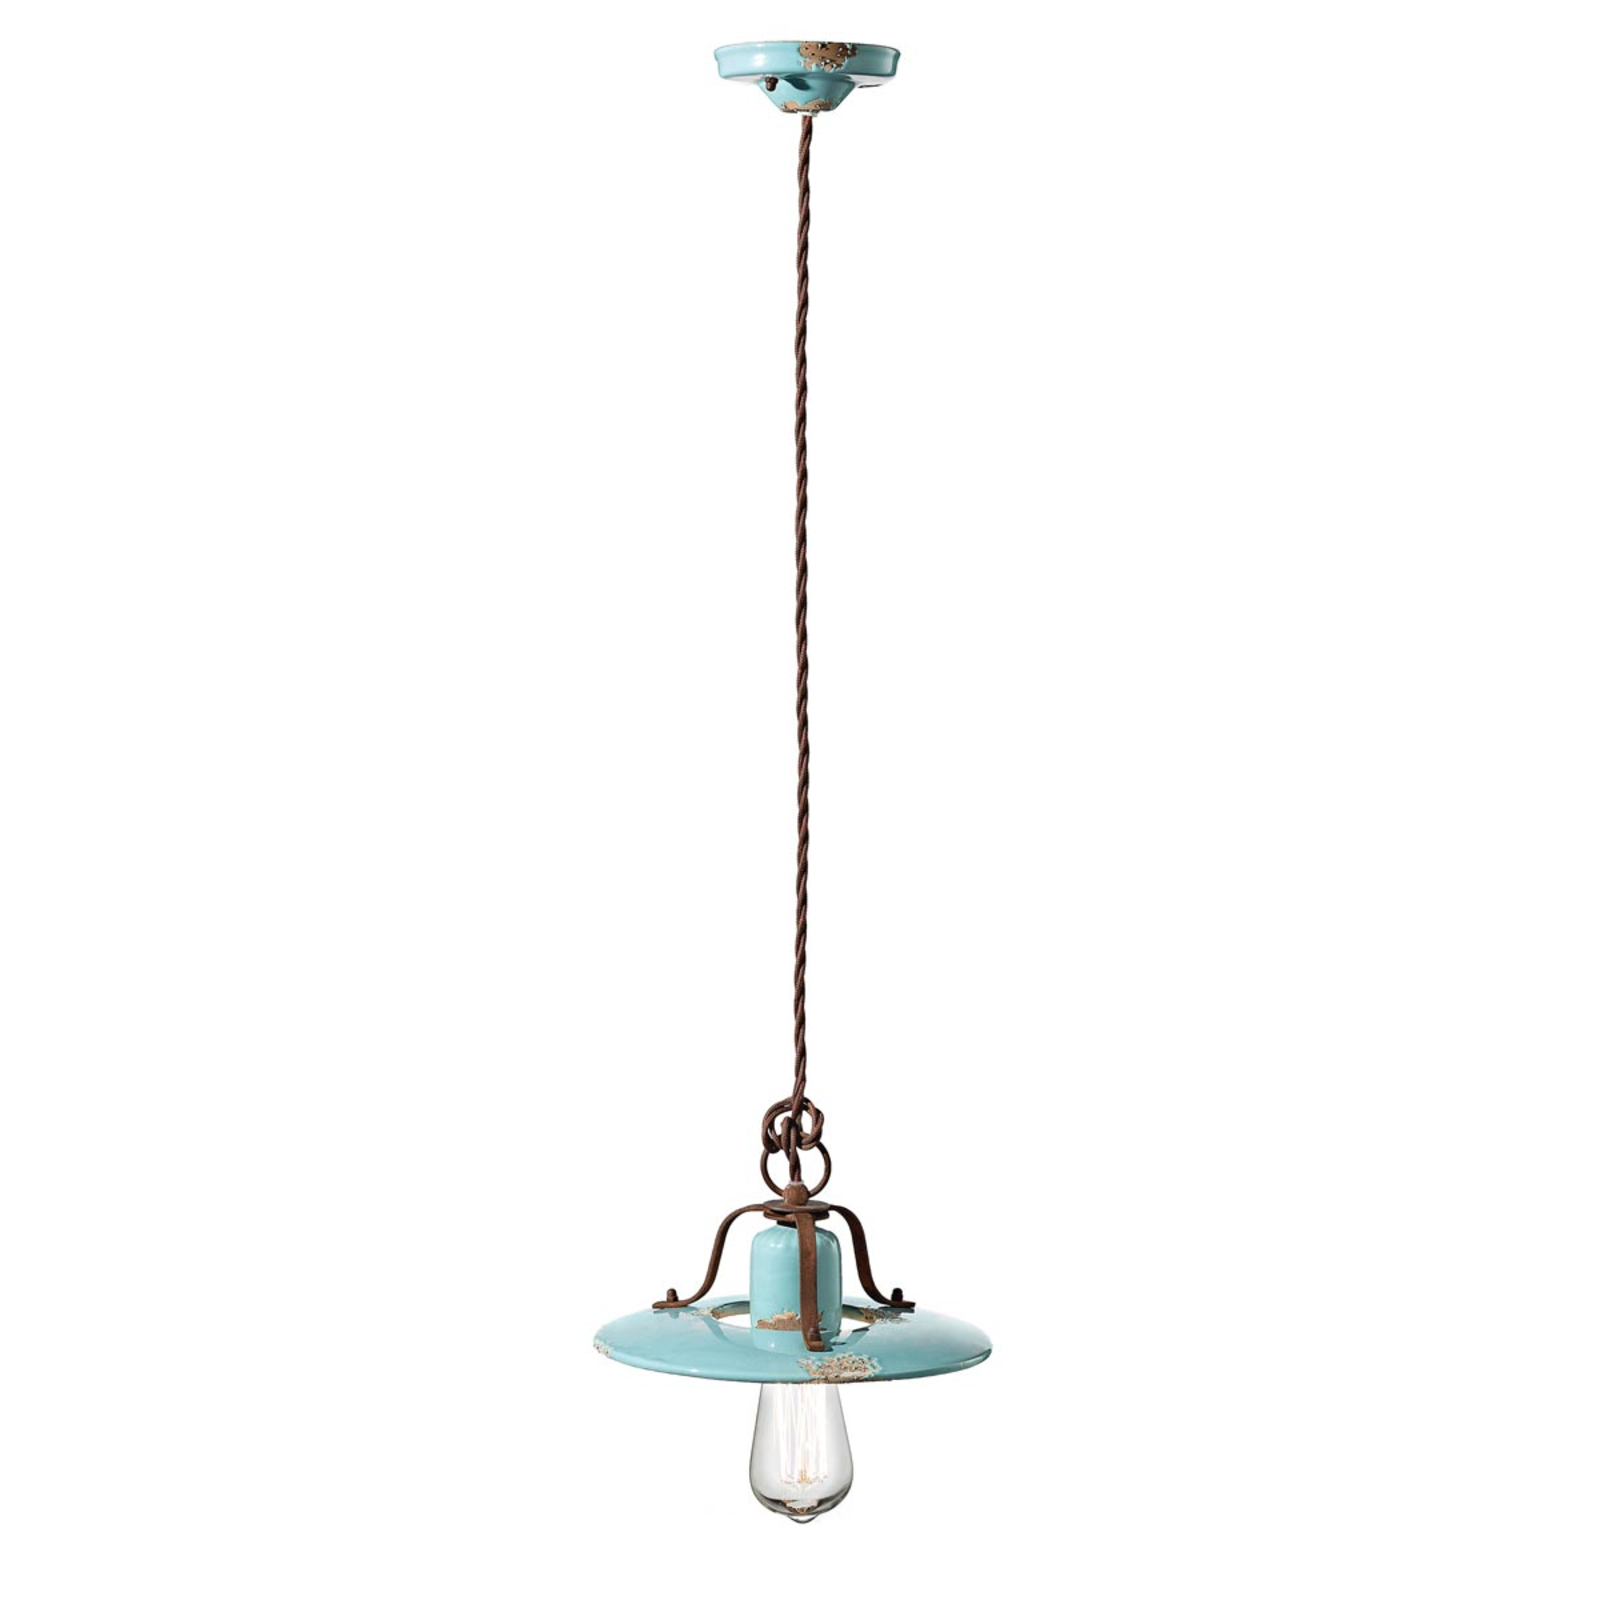 Vintage závěsná lampa Giorgia v tyrkysové barvě